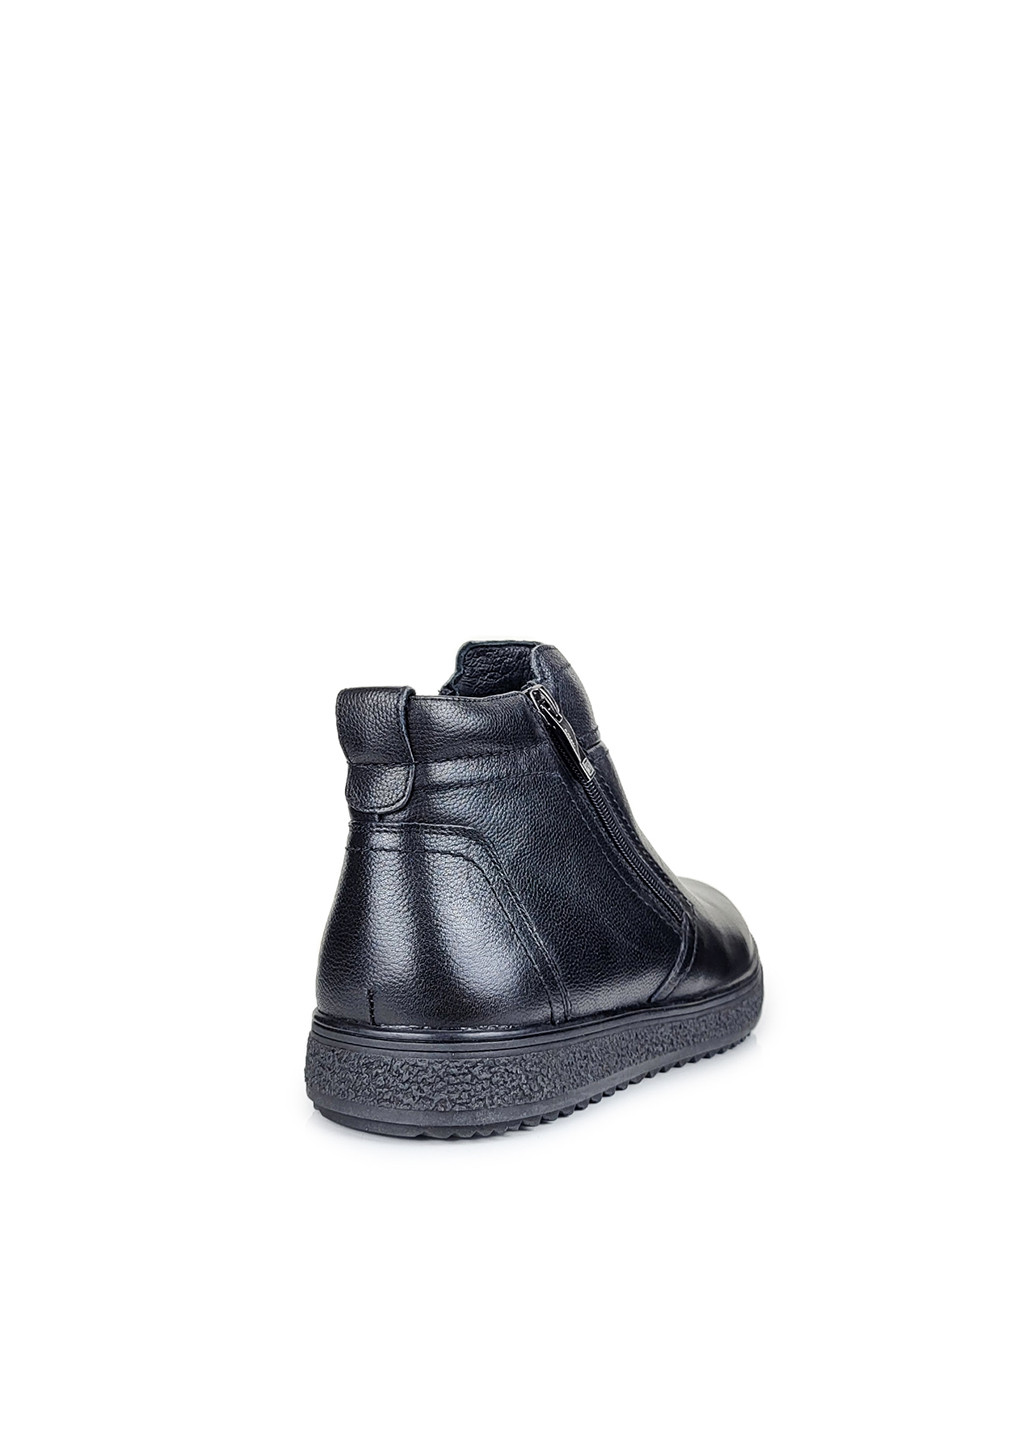 Черные зимние ботинки зимние мужские повседневные натуральной кожи с натуральным мехом черные,,0755099-101черкб, 40 Ronny